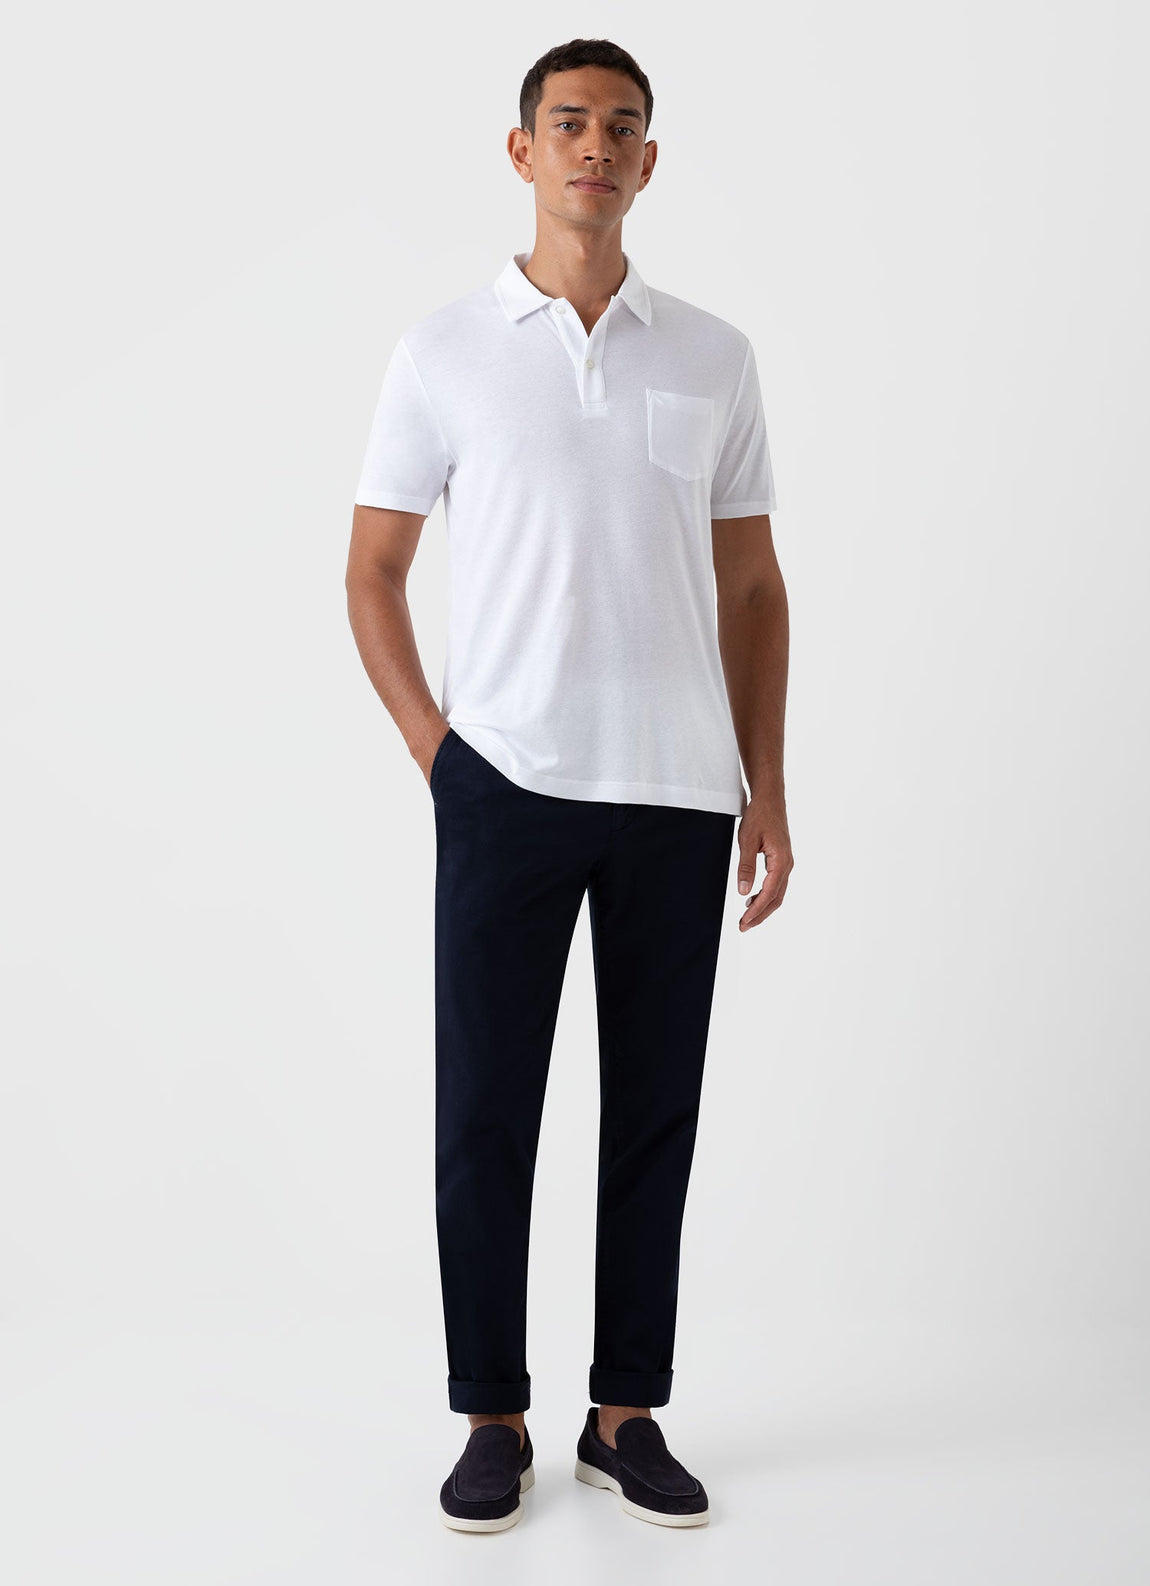 Men's Sea Island Cotton Riviera Polo Shirt in White | Sunspel